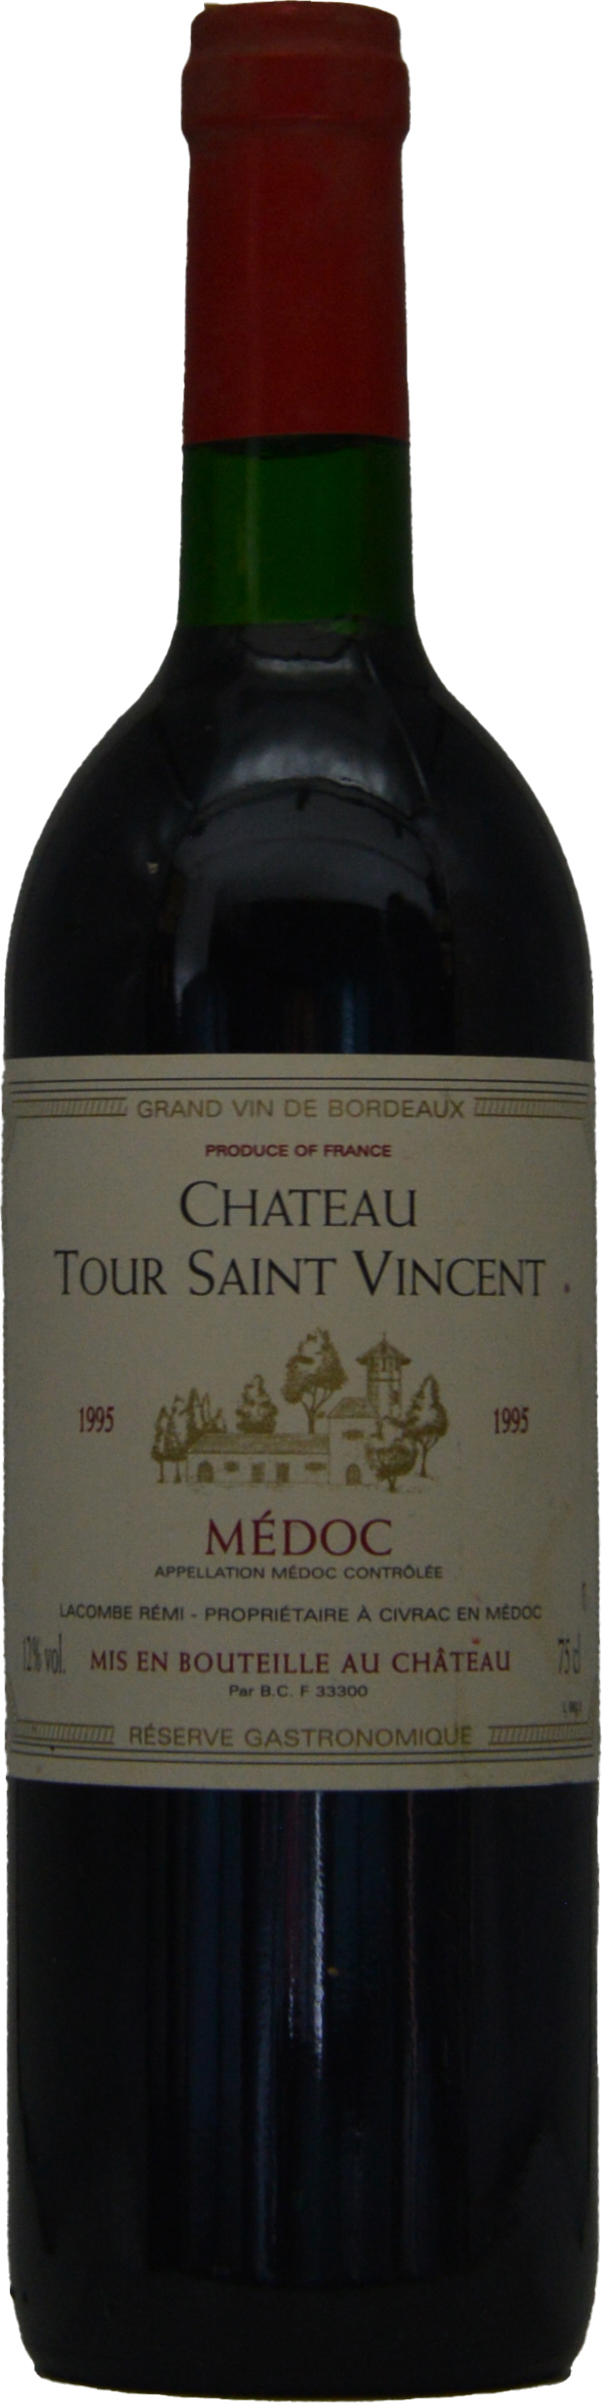 Chateau Tour Saint Vincent Medoc 1995